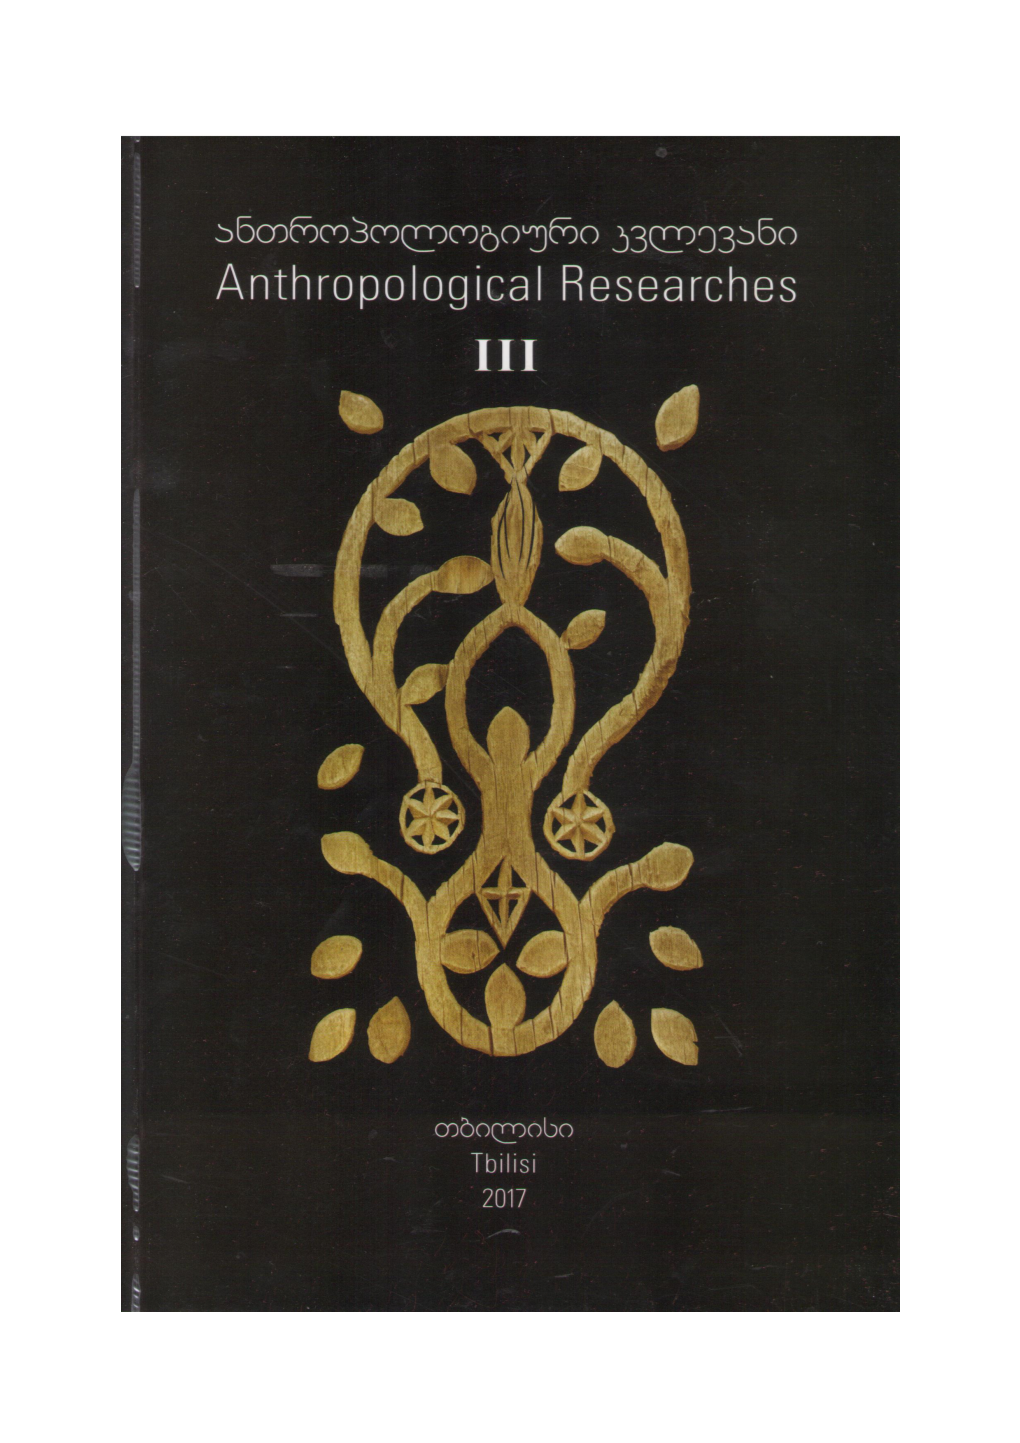 საქართველოს ანთროპოლოგთა ასოციაცია Association of Georgian Anthropologists